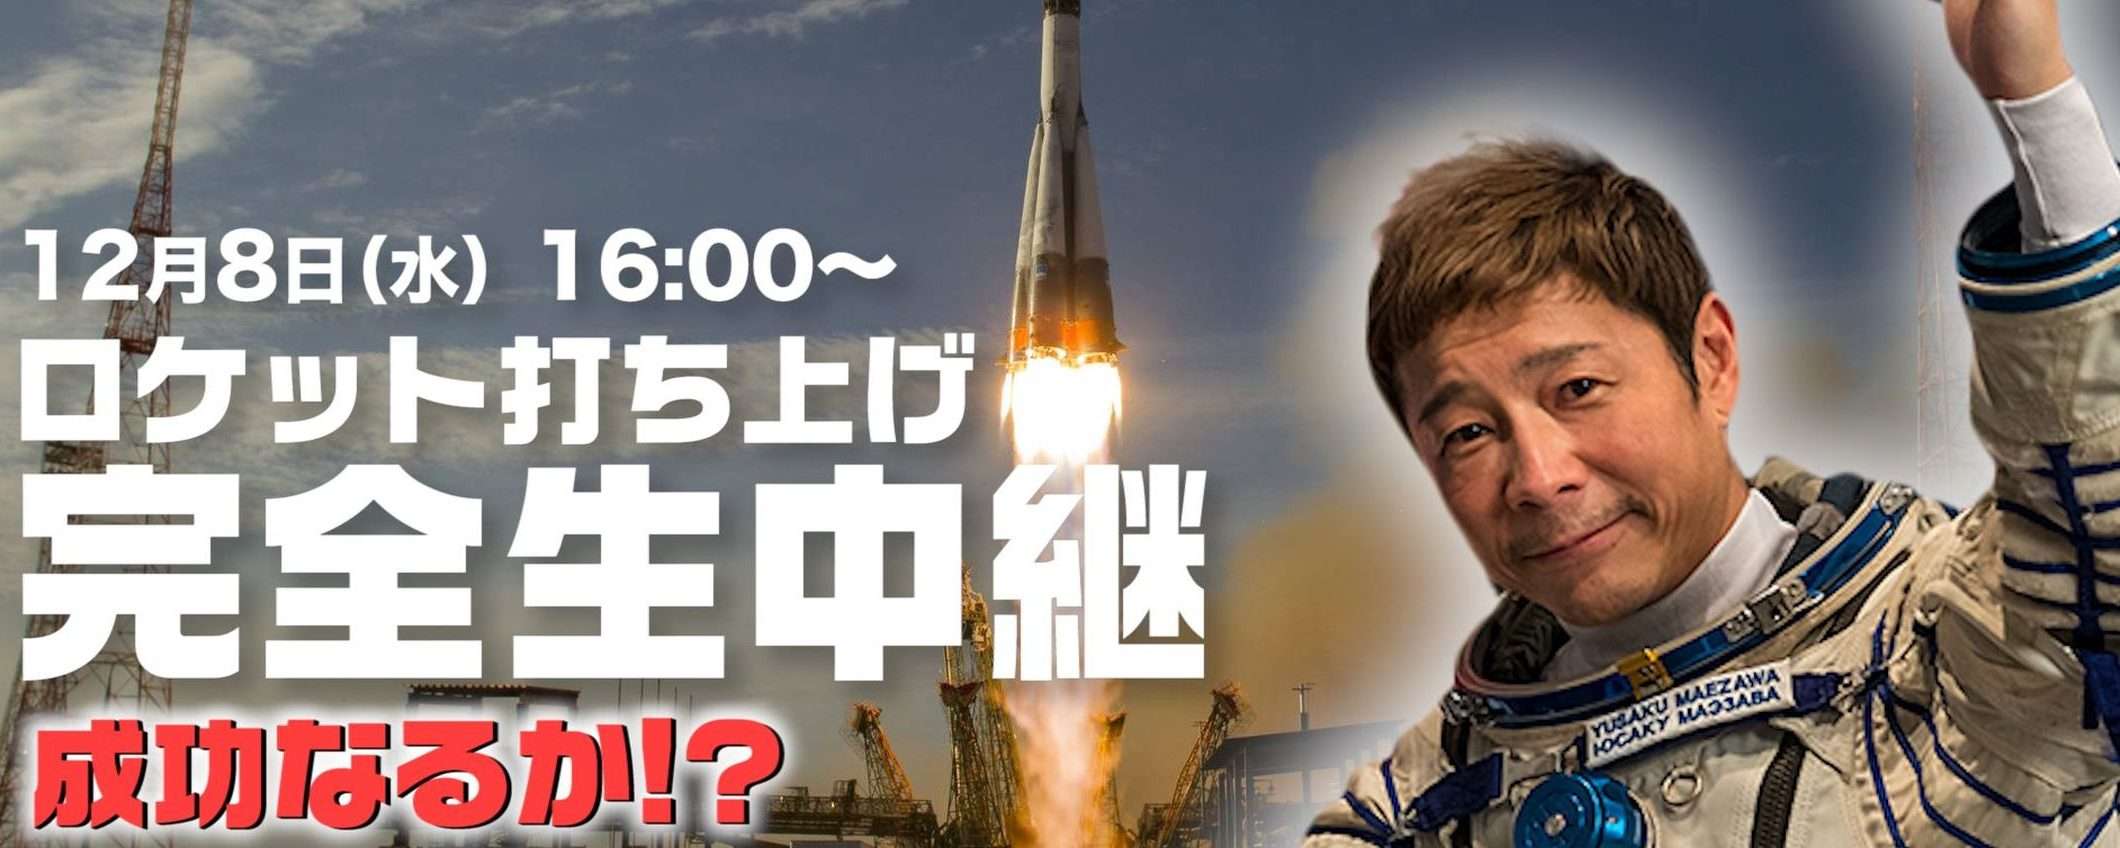 Space Adventures: Yusaku Maezawa ritorna sulla Terra